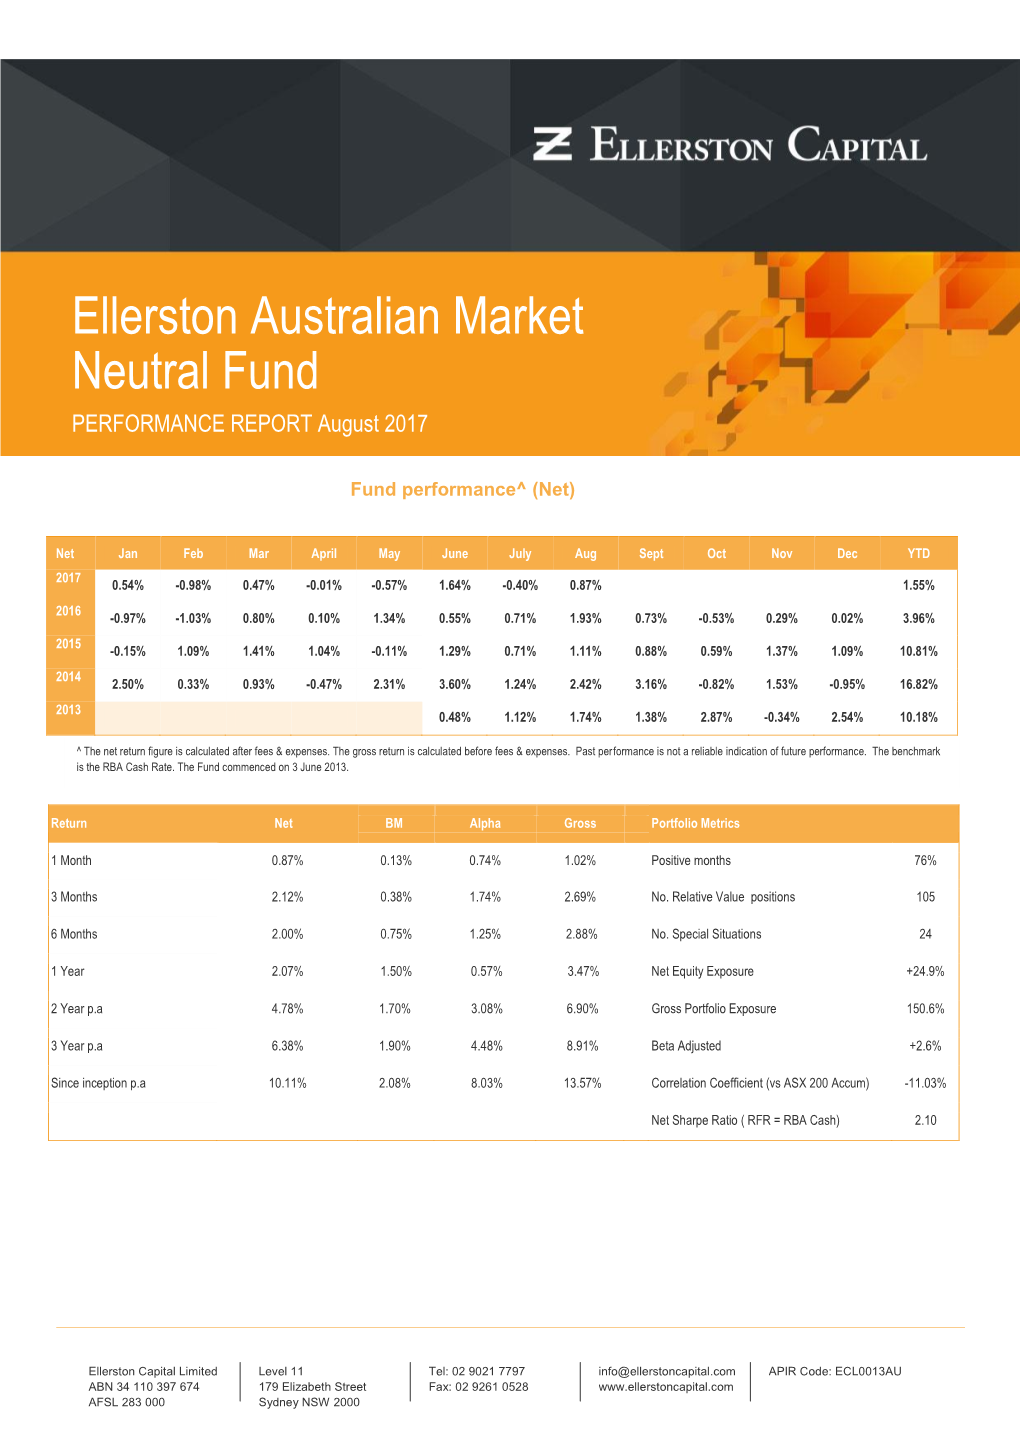 Ellerston Australian Market Neutral Fund PERFORMANCE REPORT August 2017